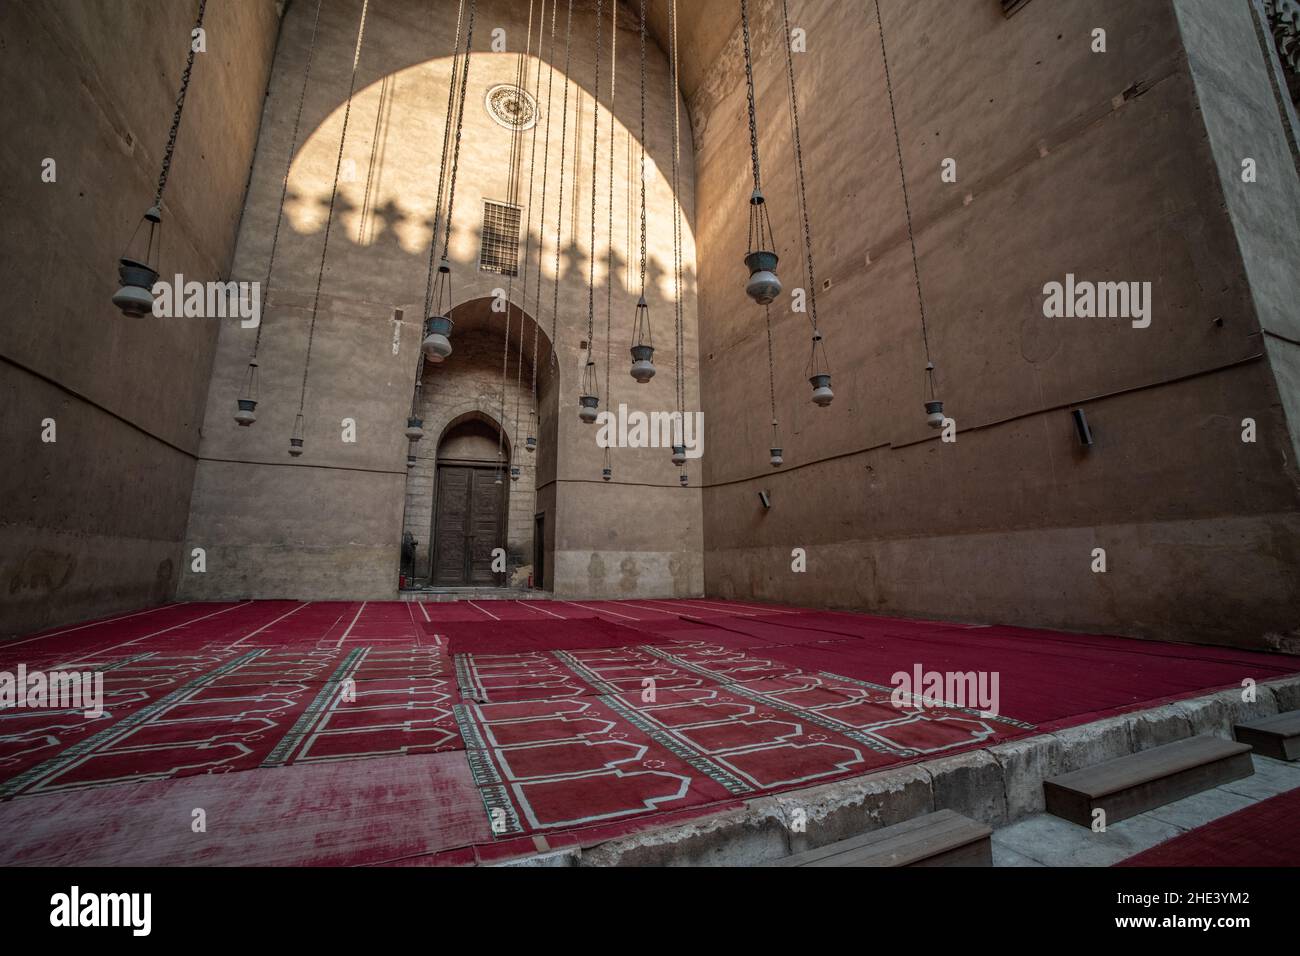 Eines der Iwans oder gewölbte Hallen in der Moschee Madrasa von Sultan Hassan in Kairo, die als eines der größten islamischen Gebäude der Welt gilt. Stockfoto